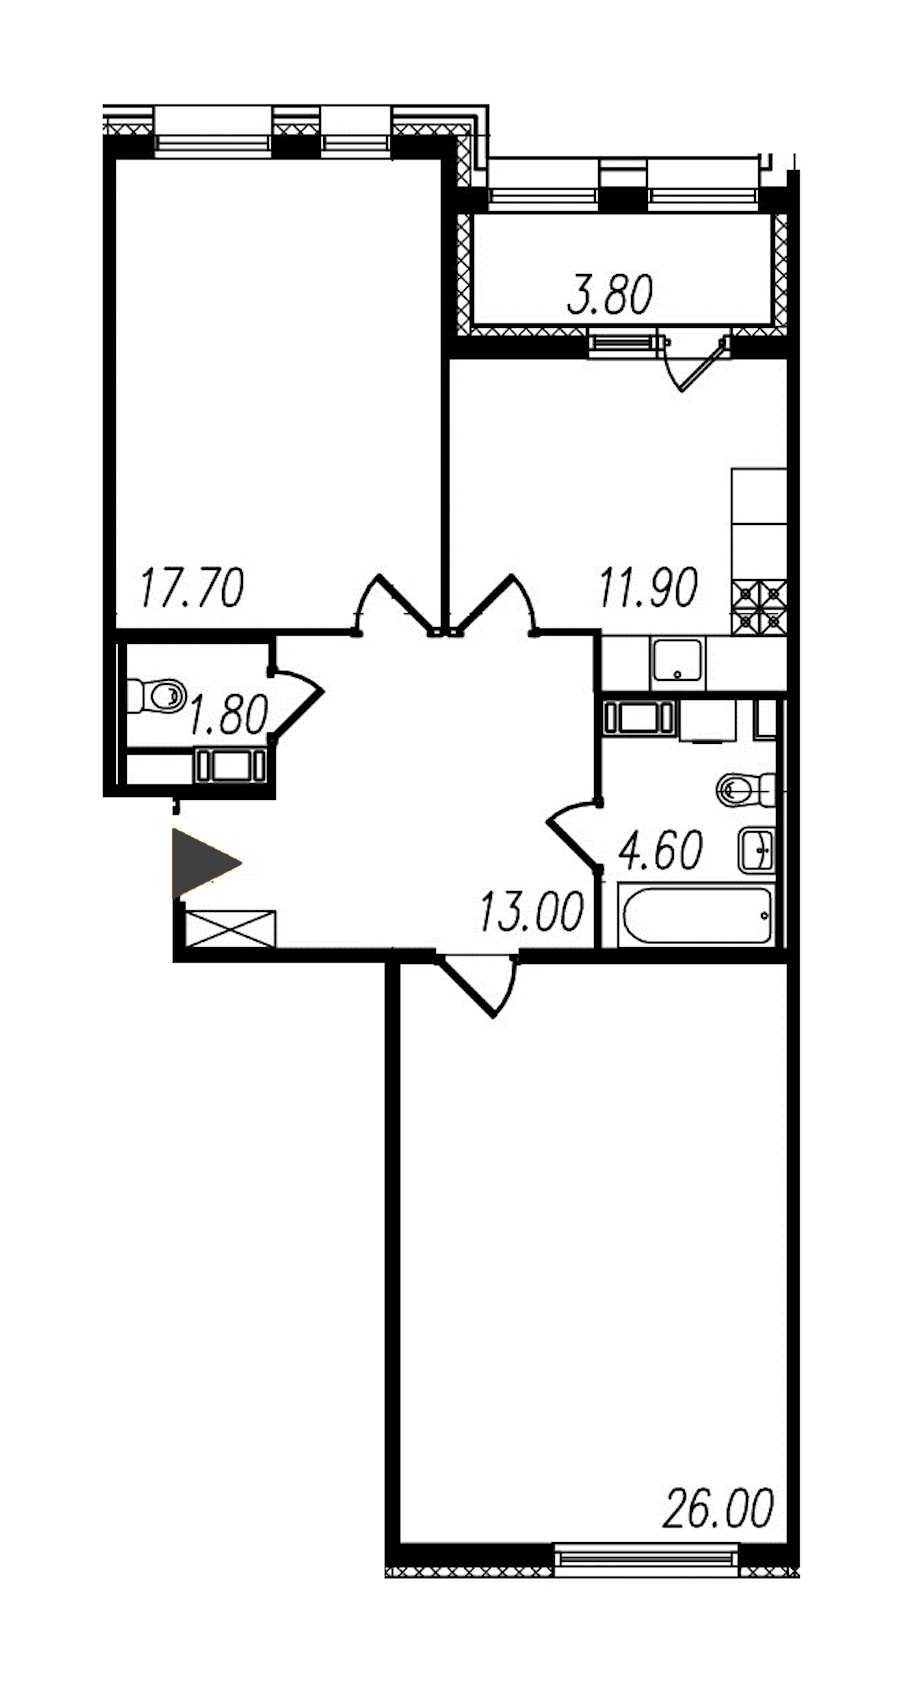 Двухкомнатная квартира в : площадь 75 м2 , этаж: 8 – купить в Санкт-Петербурге